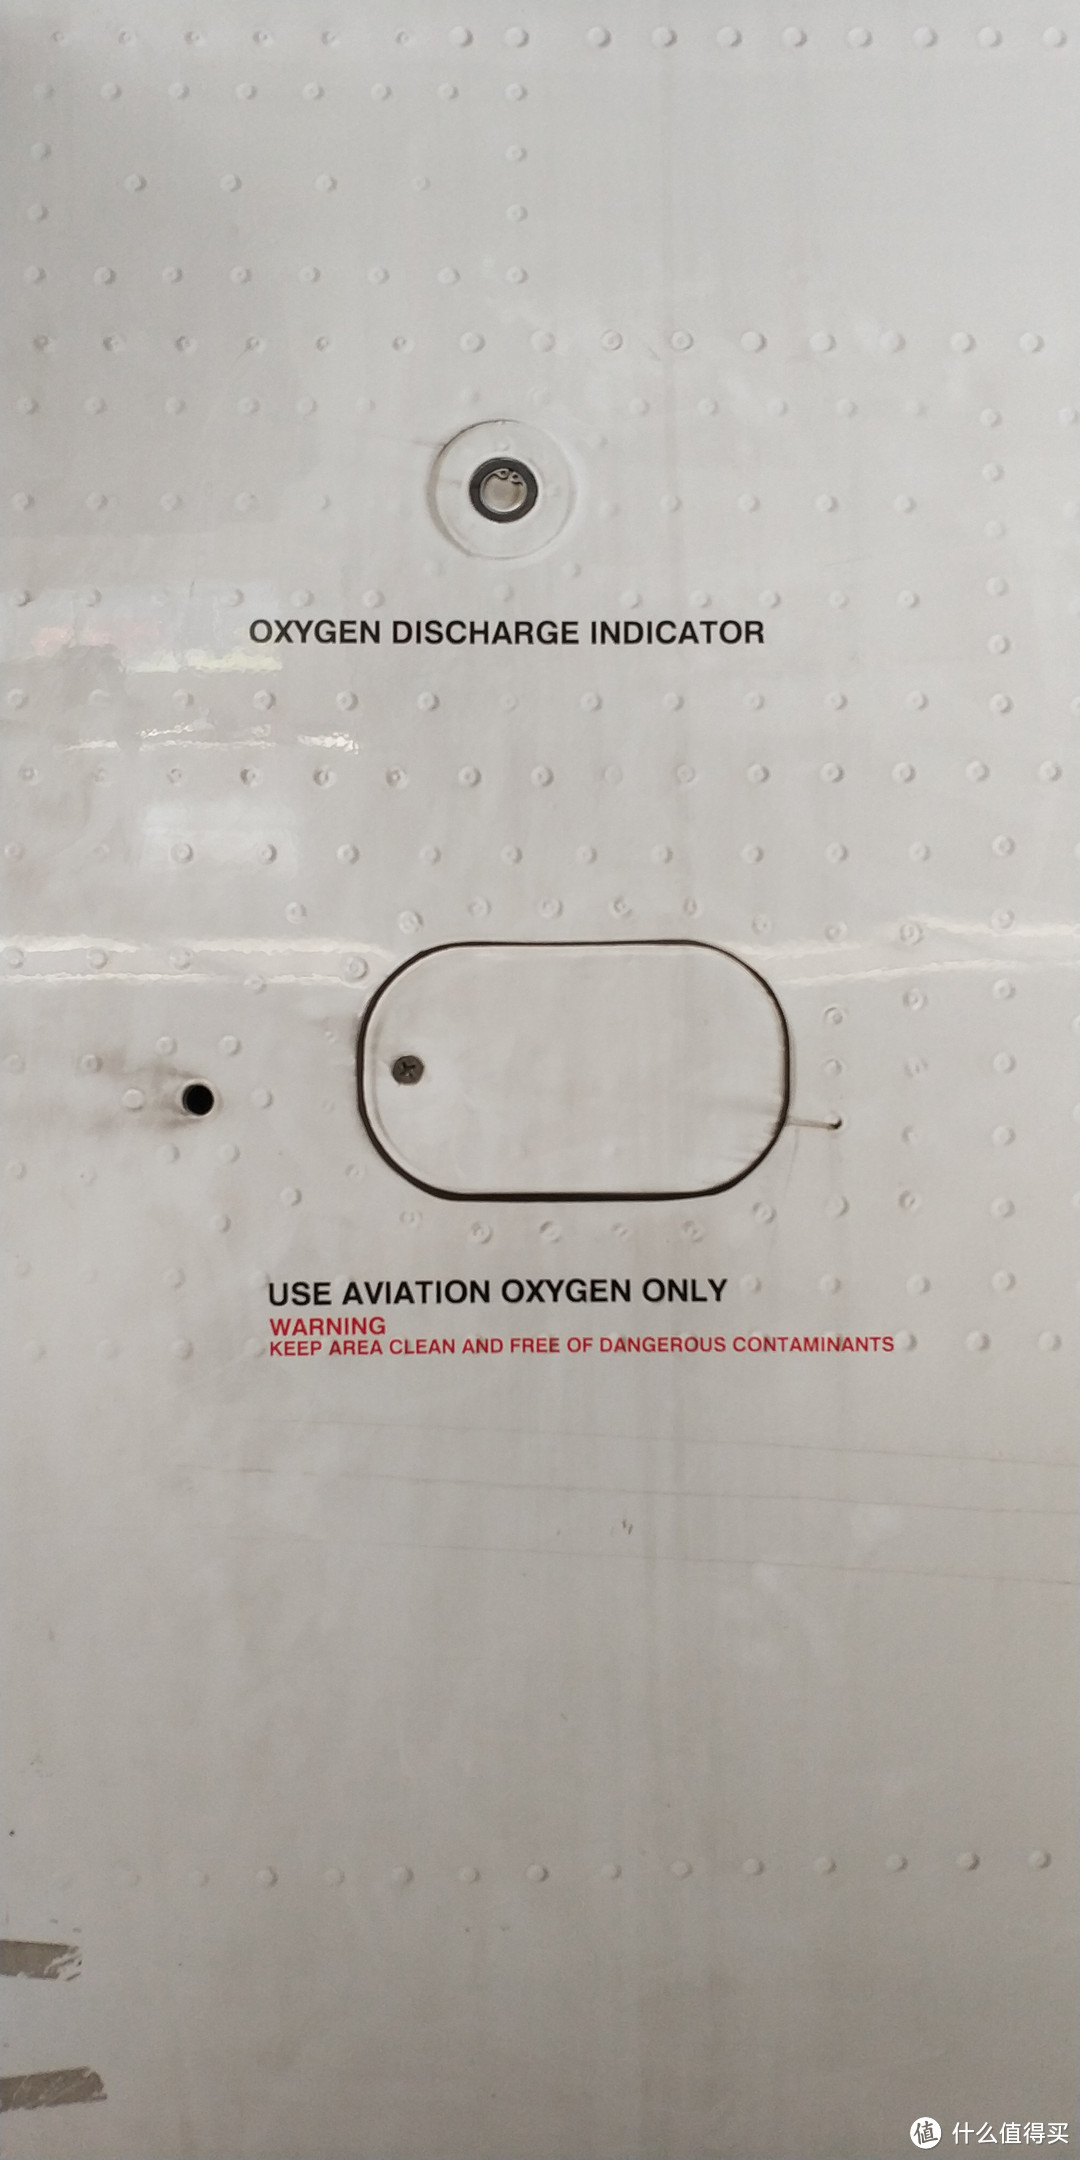 机身充氧接口，这个充氧接口是供给飞行员的，可以重复使用的。客舱使用的是化学式的氧气发生器，只能用一次，用完了需要更换